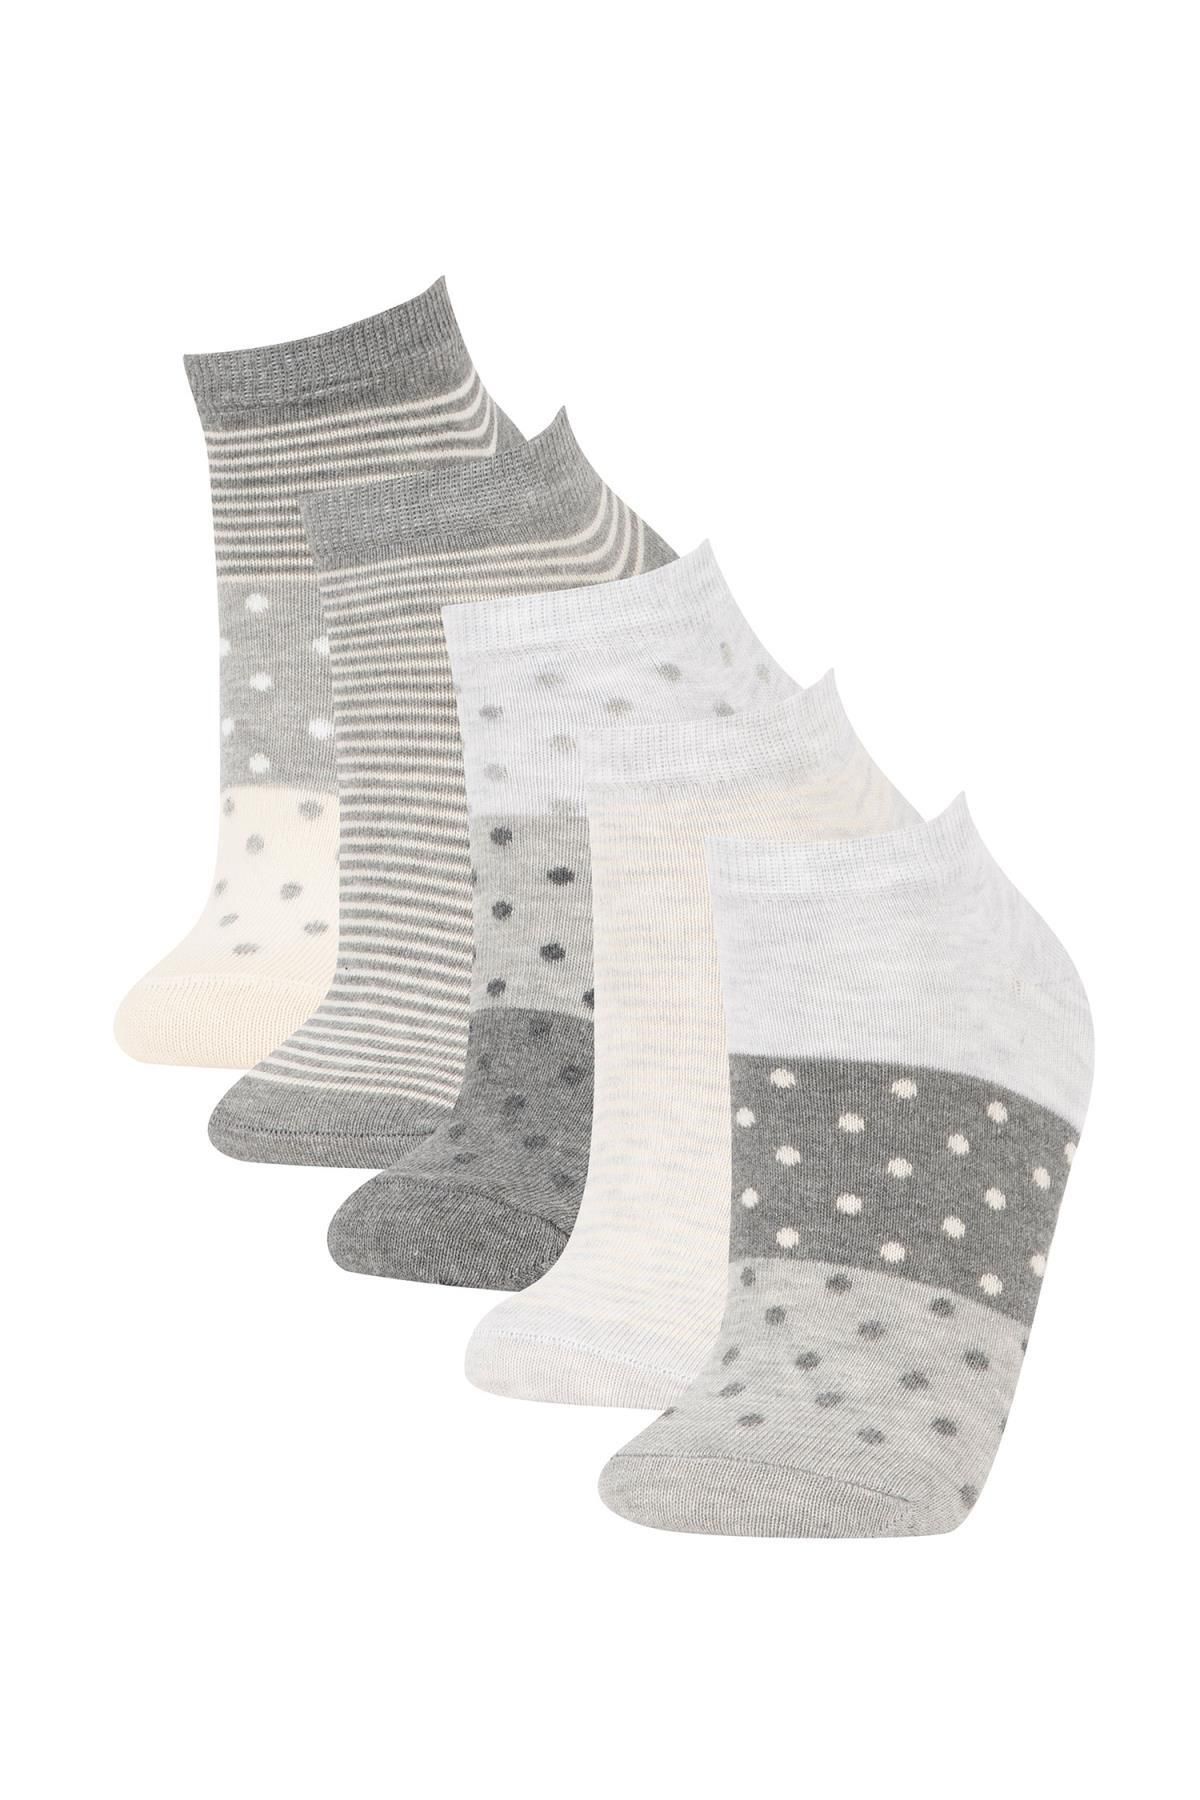 Defacto Kadın Desenli 5li Patik Çorap R8302azns